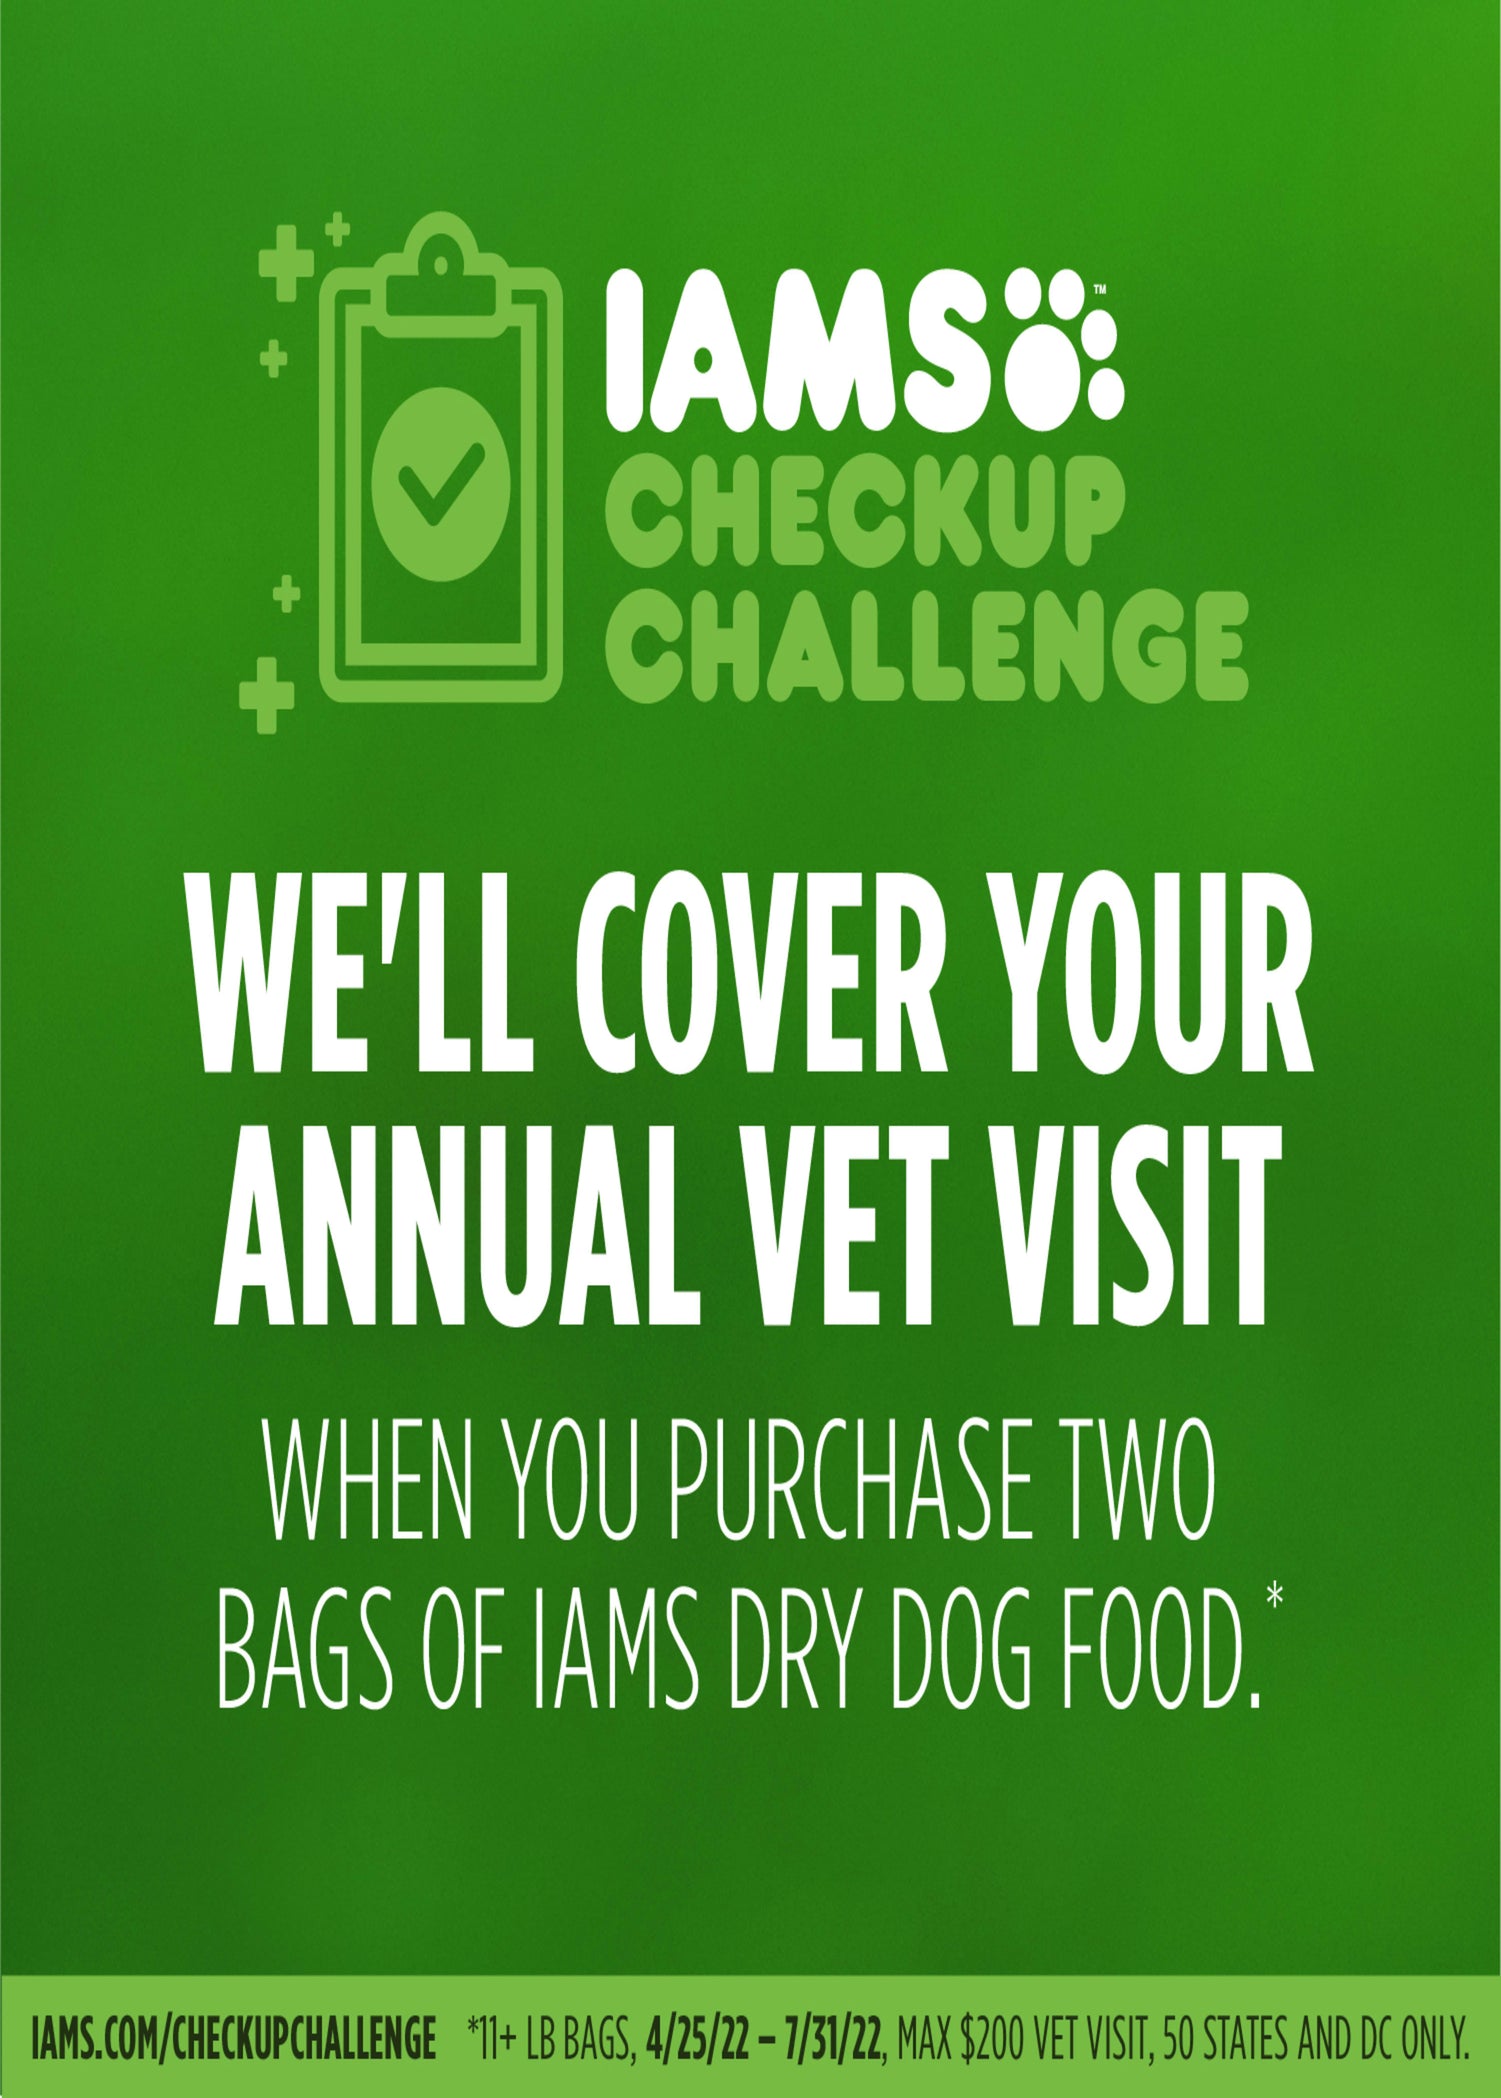 IAMS Minichunks Lamb & Rice Dry Dog Food for Adult Dog, 15 Lb. Bag